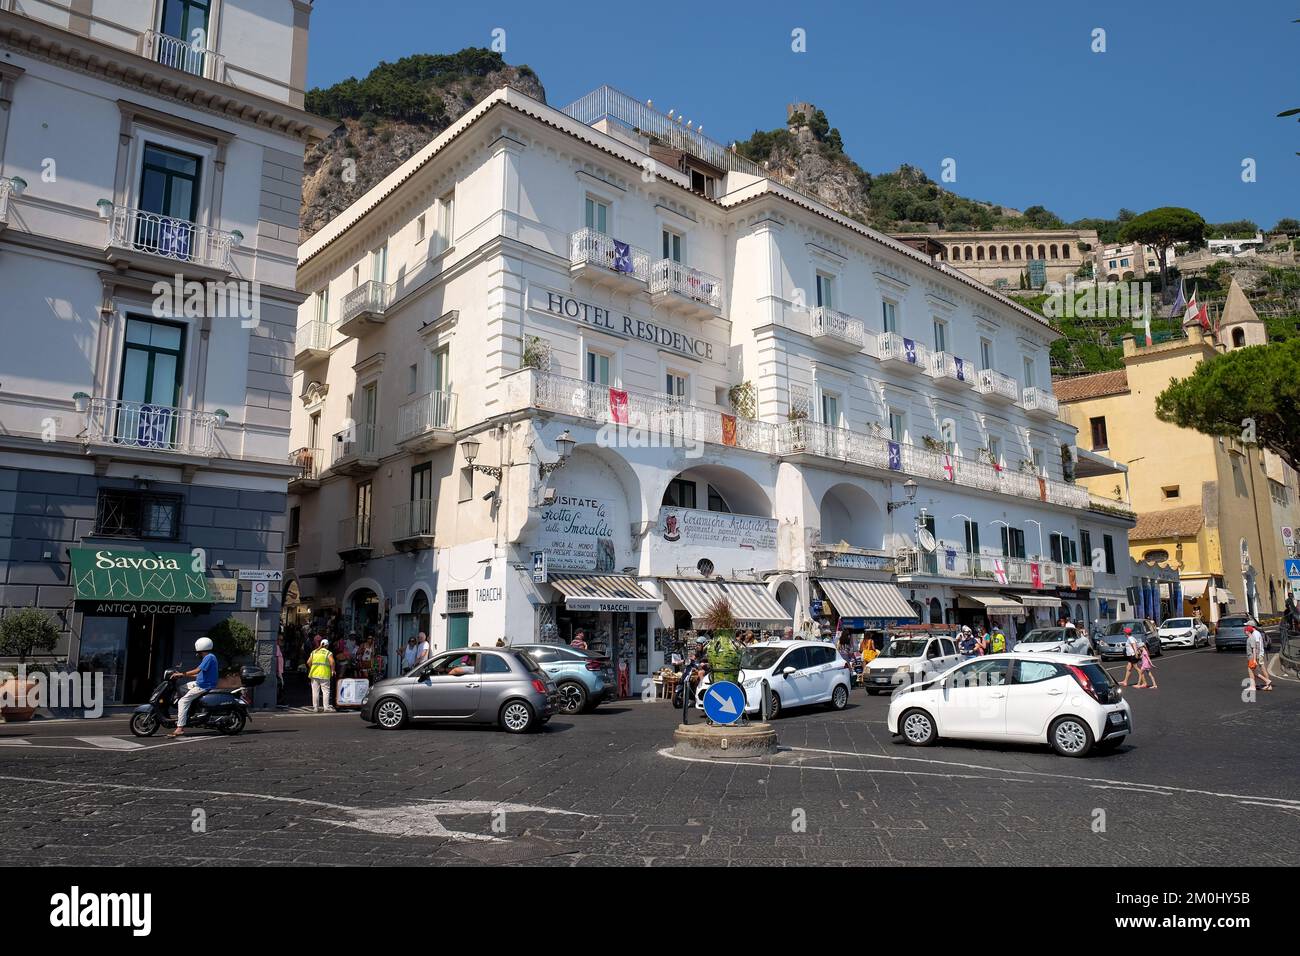 La strada principale che passa per Amalfi vicino al porto mostra le auto che navigano lungo la piccola rotonda con l'Hotel Residence e Savoia sullo sfondo. Foto Stock